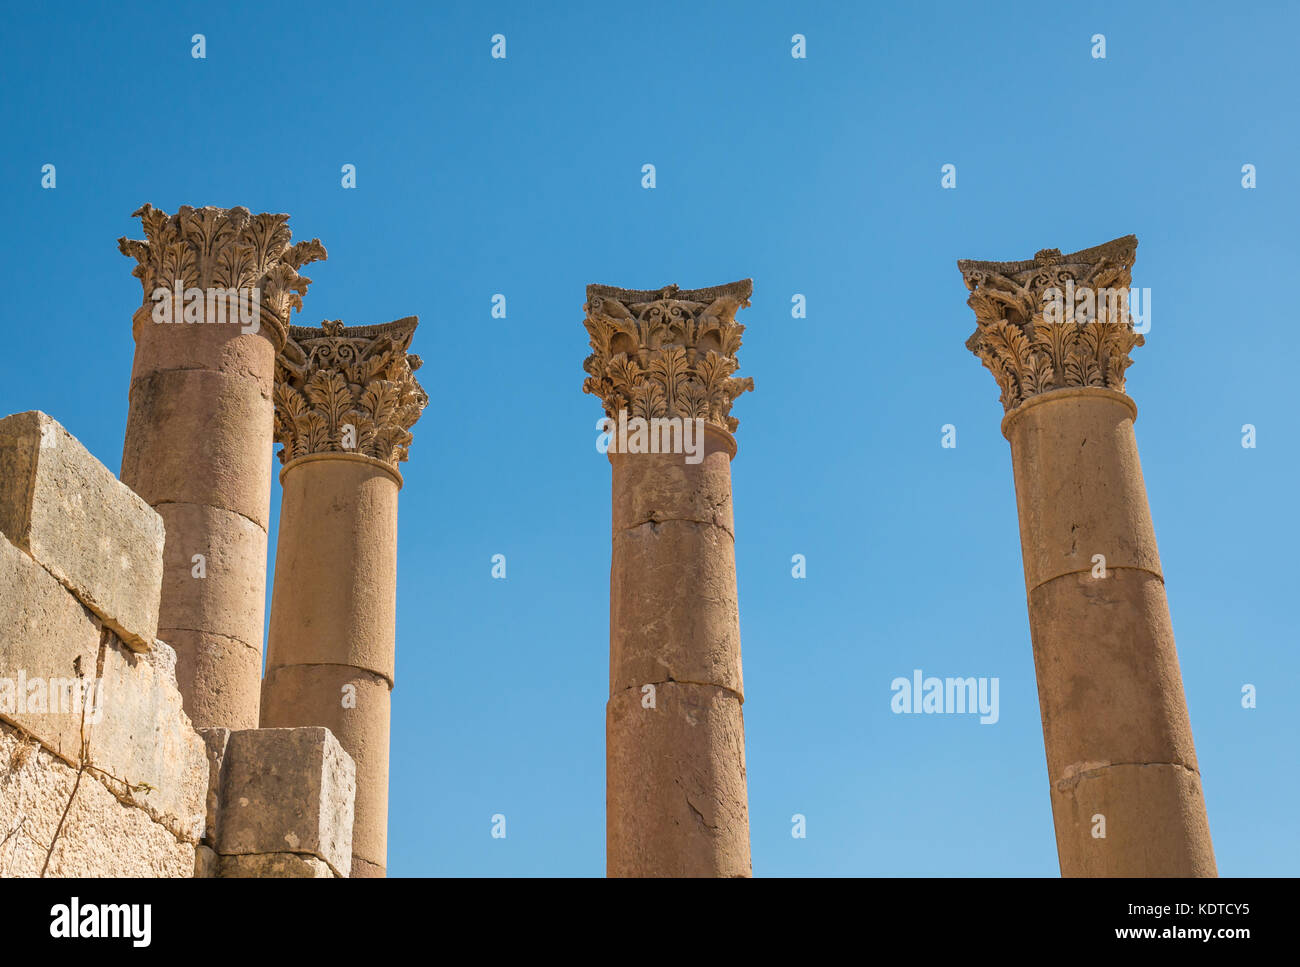 Il Tempio di Artemide, cercando fino ad alte colonne corinzie con foglie di acanto decorazioni scolpite, città romana Jerash sito archeologico, Giordania, Medio Oriente Foto Stock